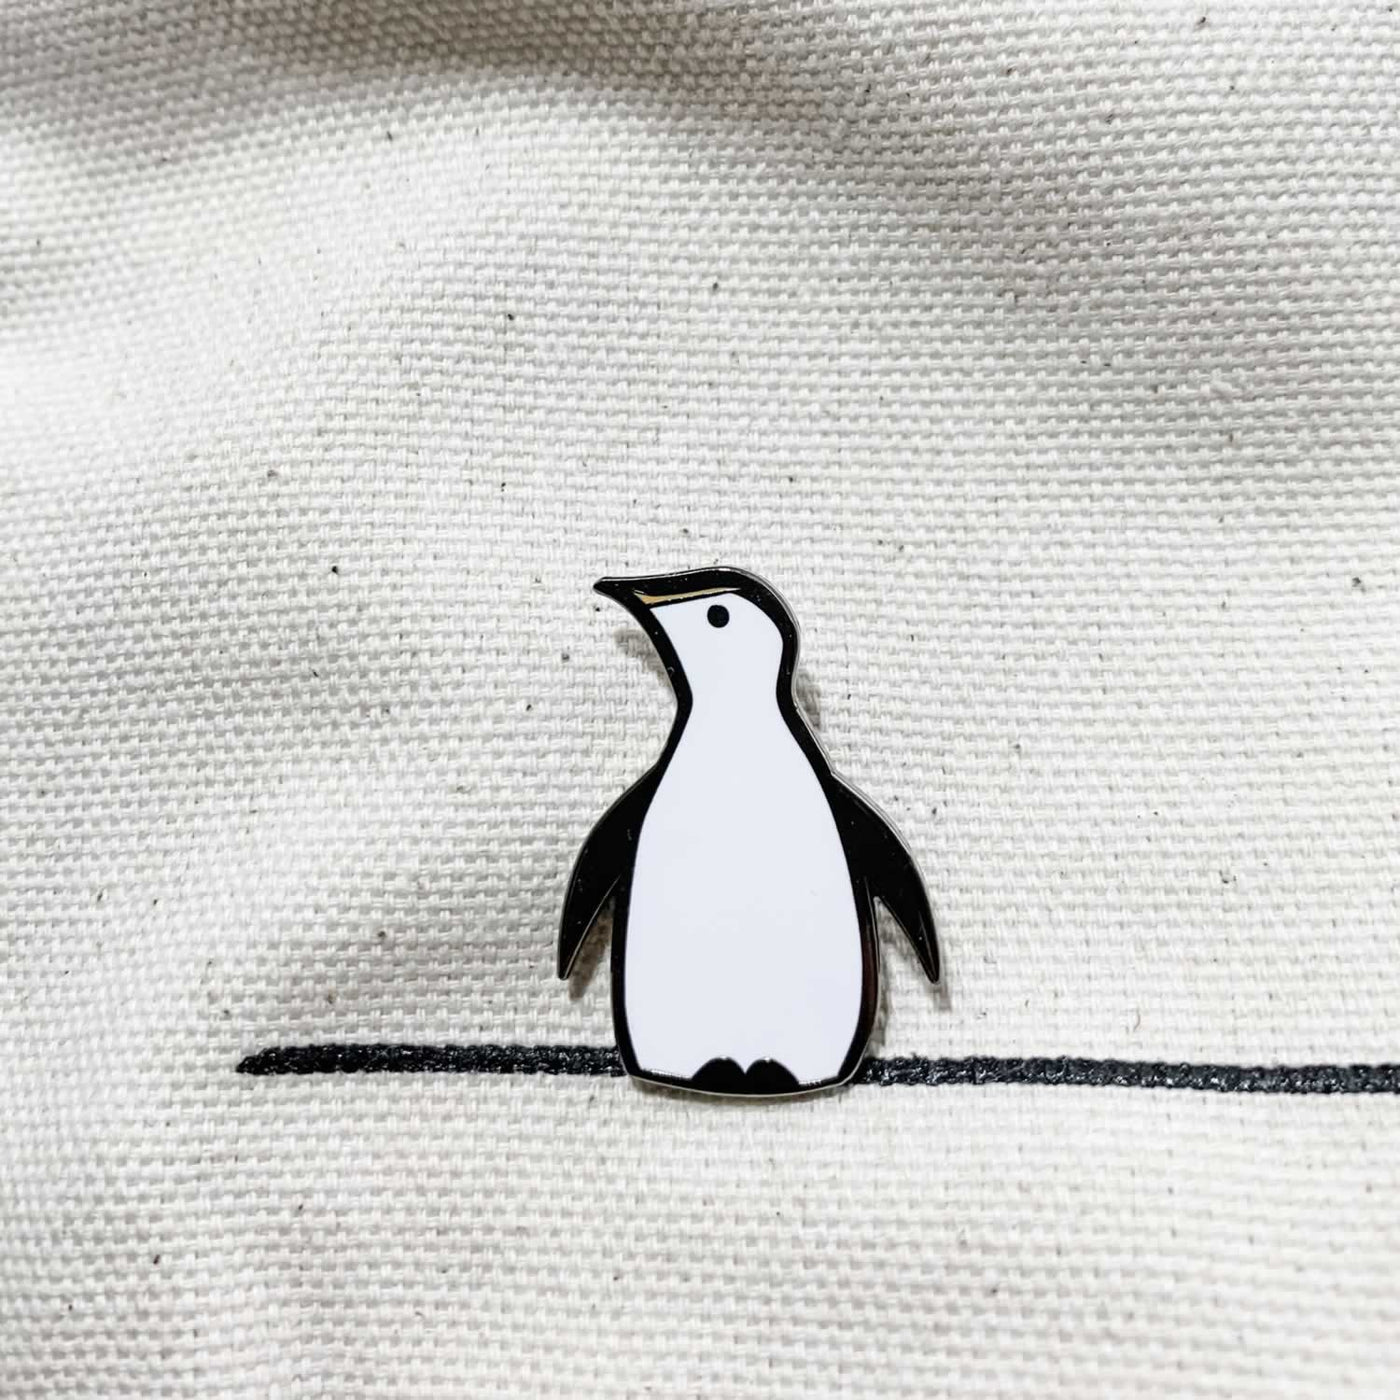 Penguin Enamel Pin on Material